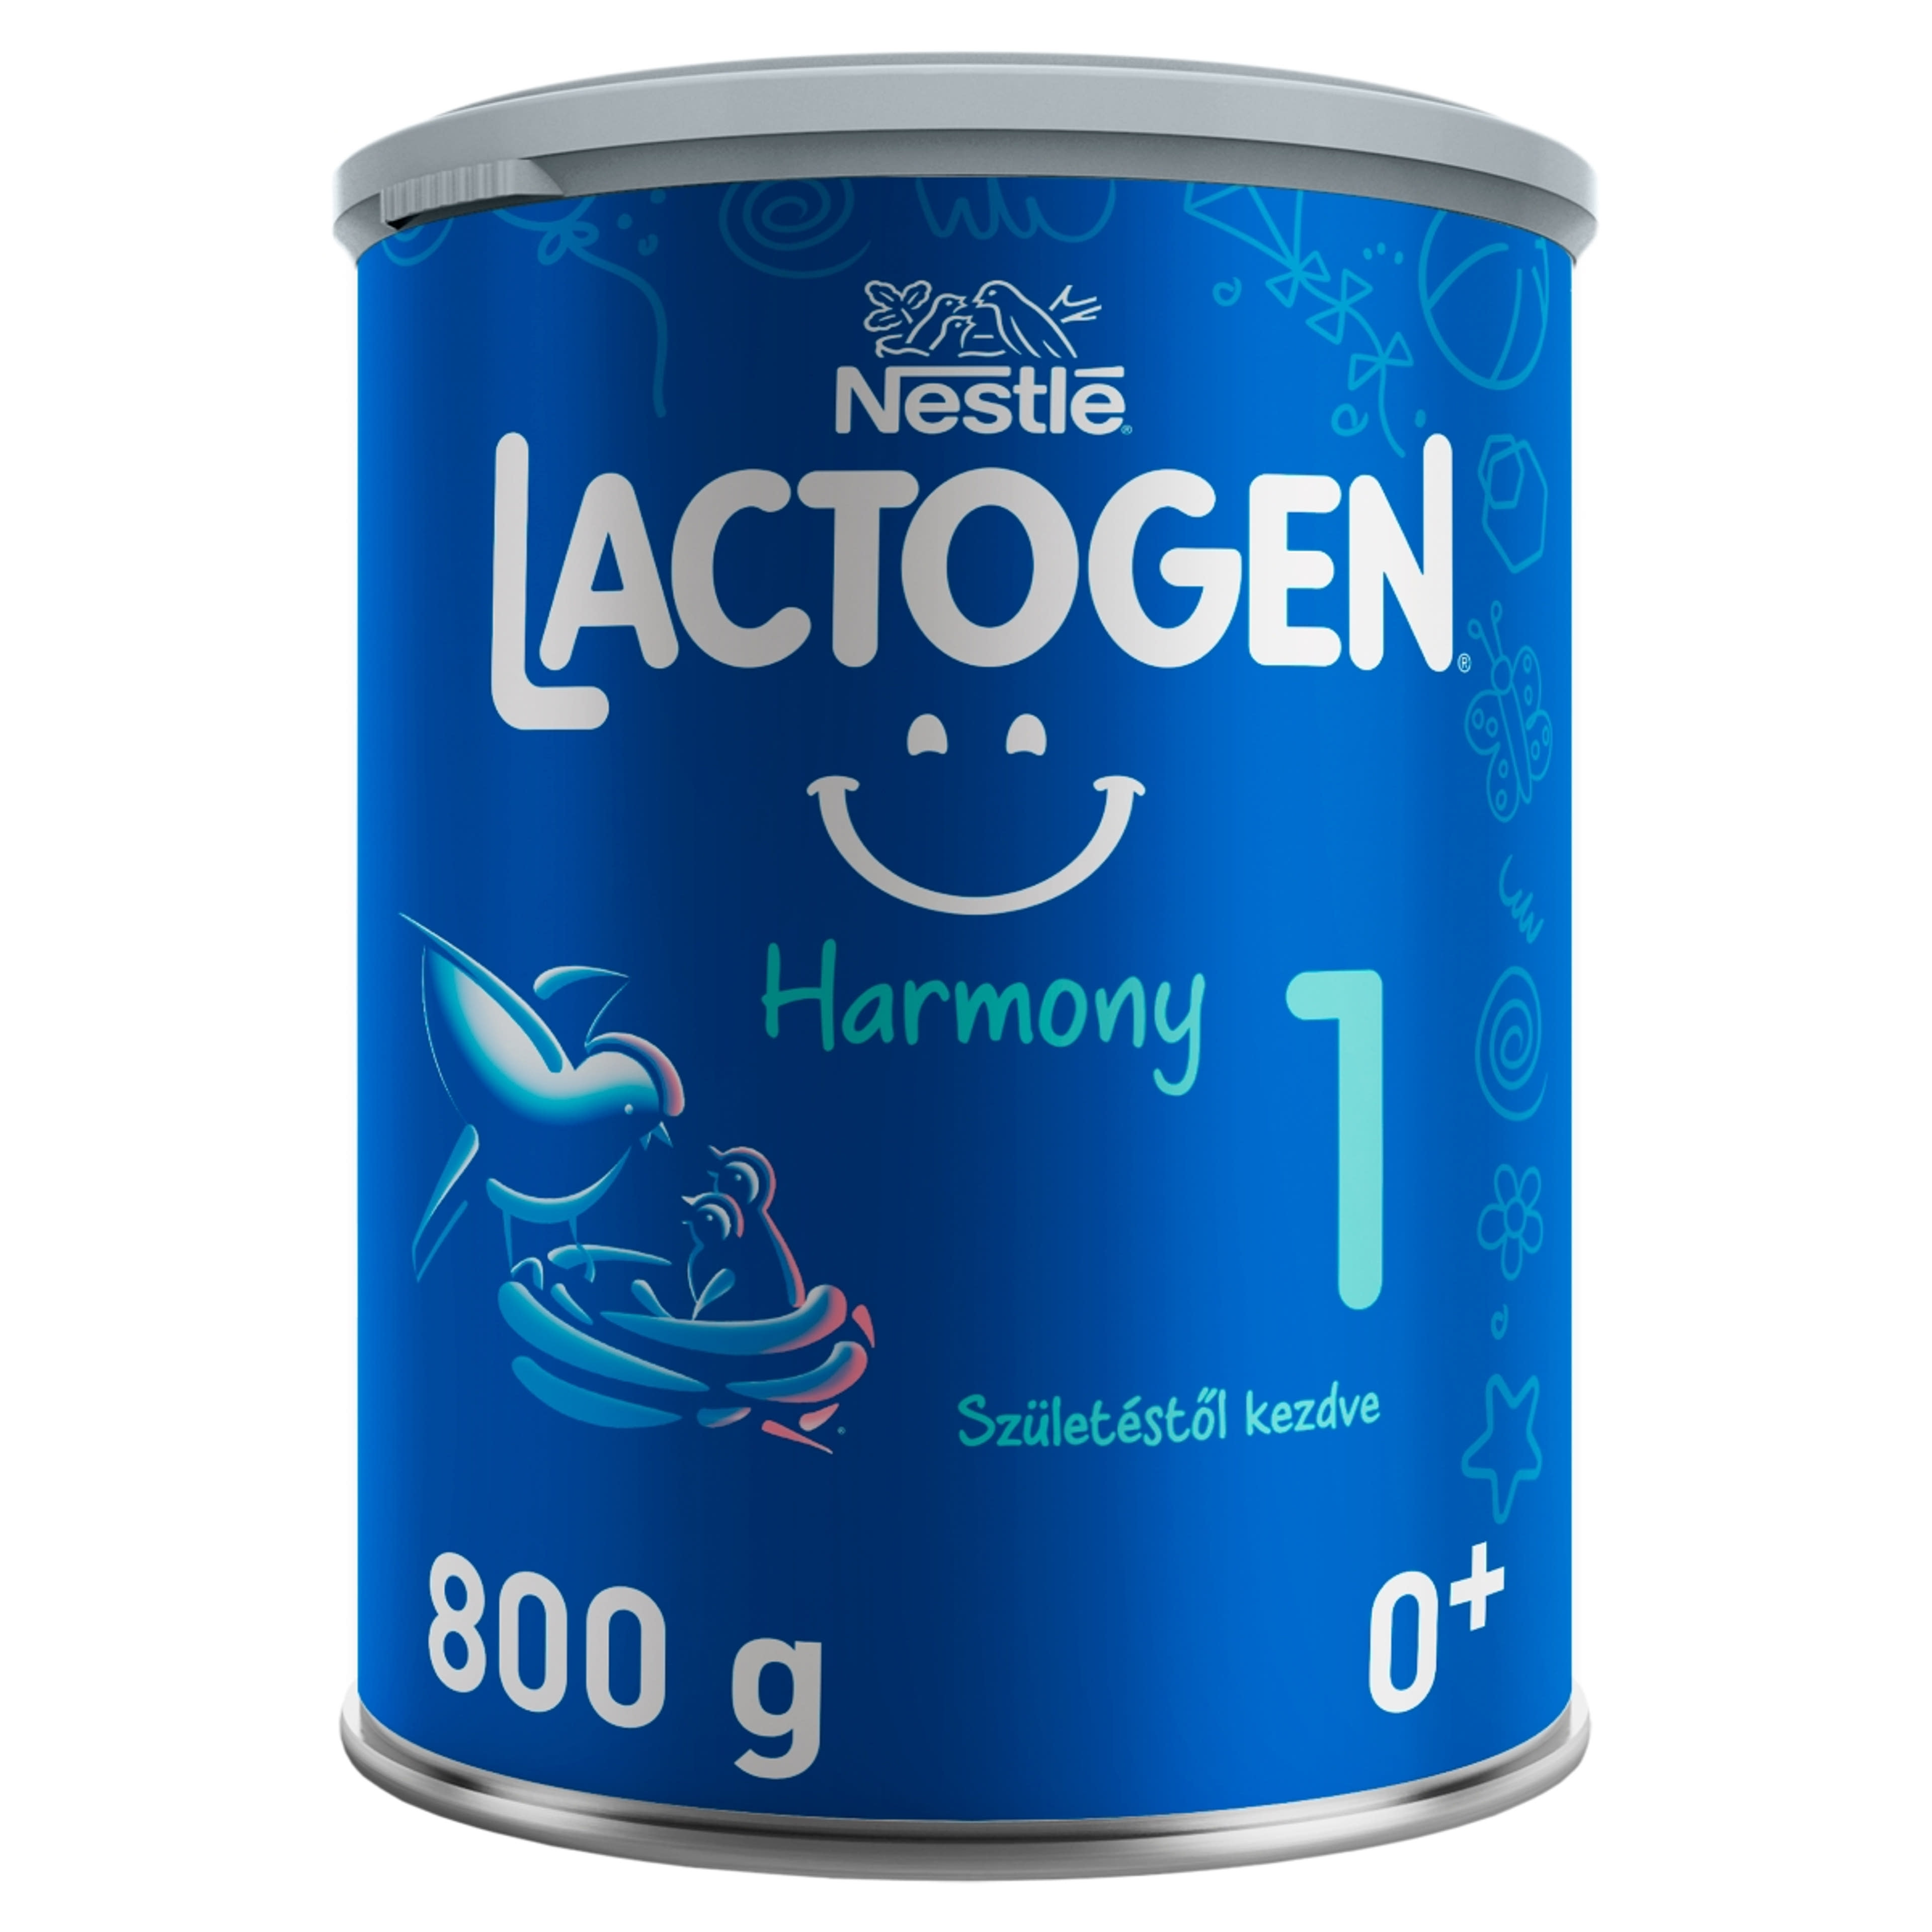 Lactogen harmony 1 - 800 g-3